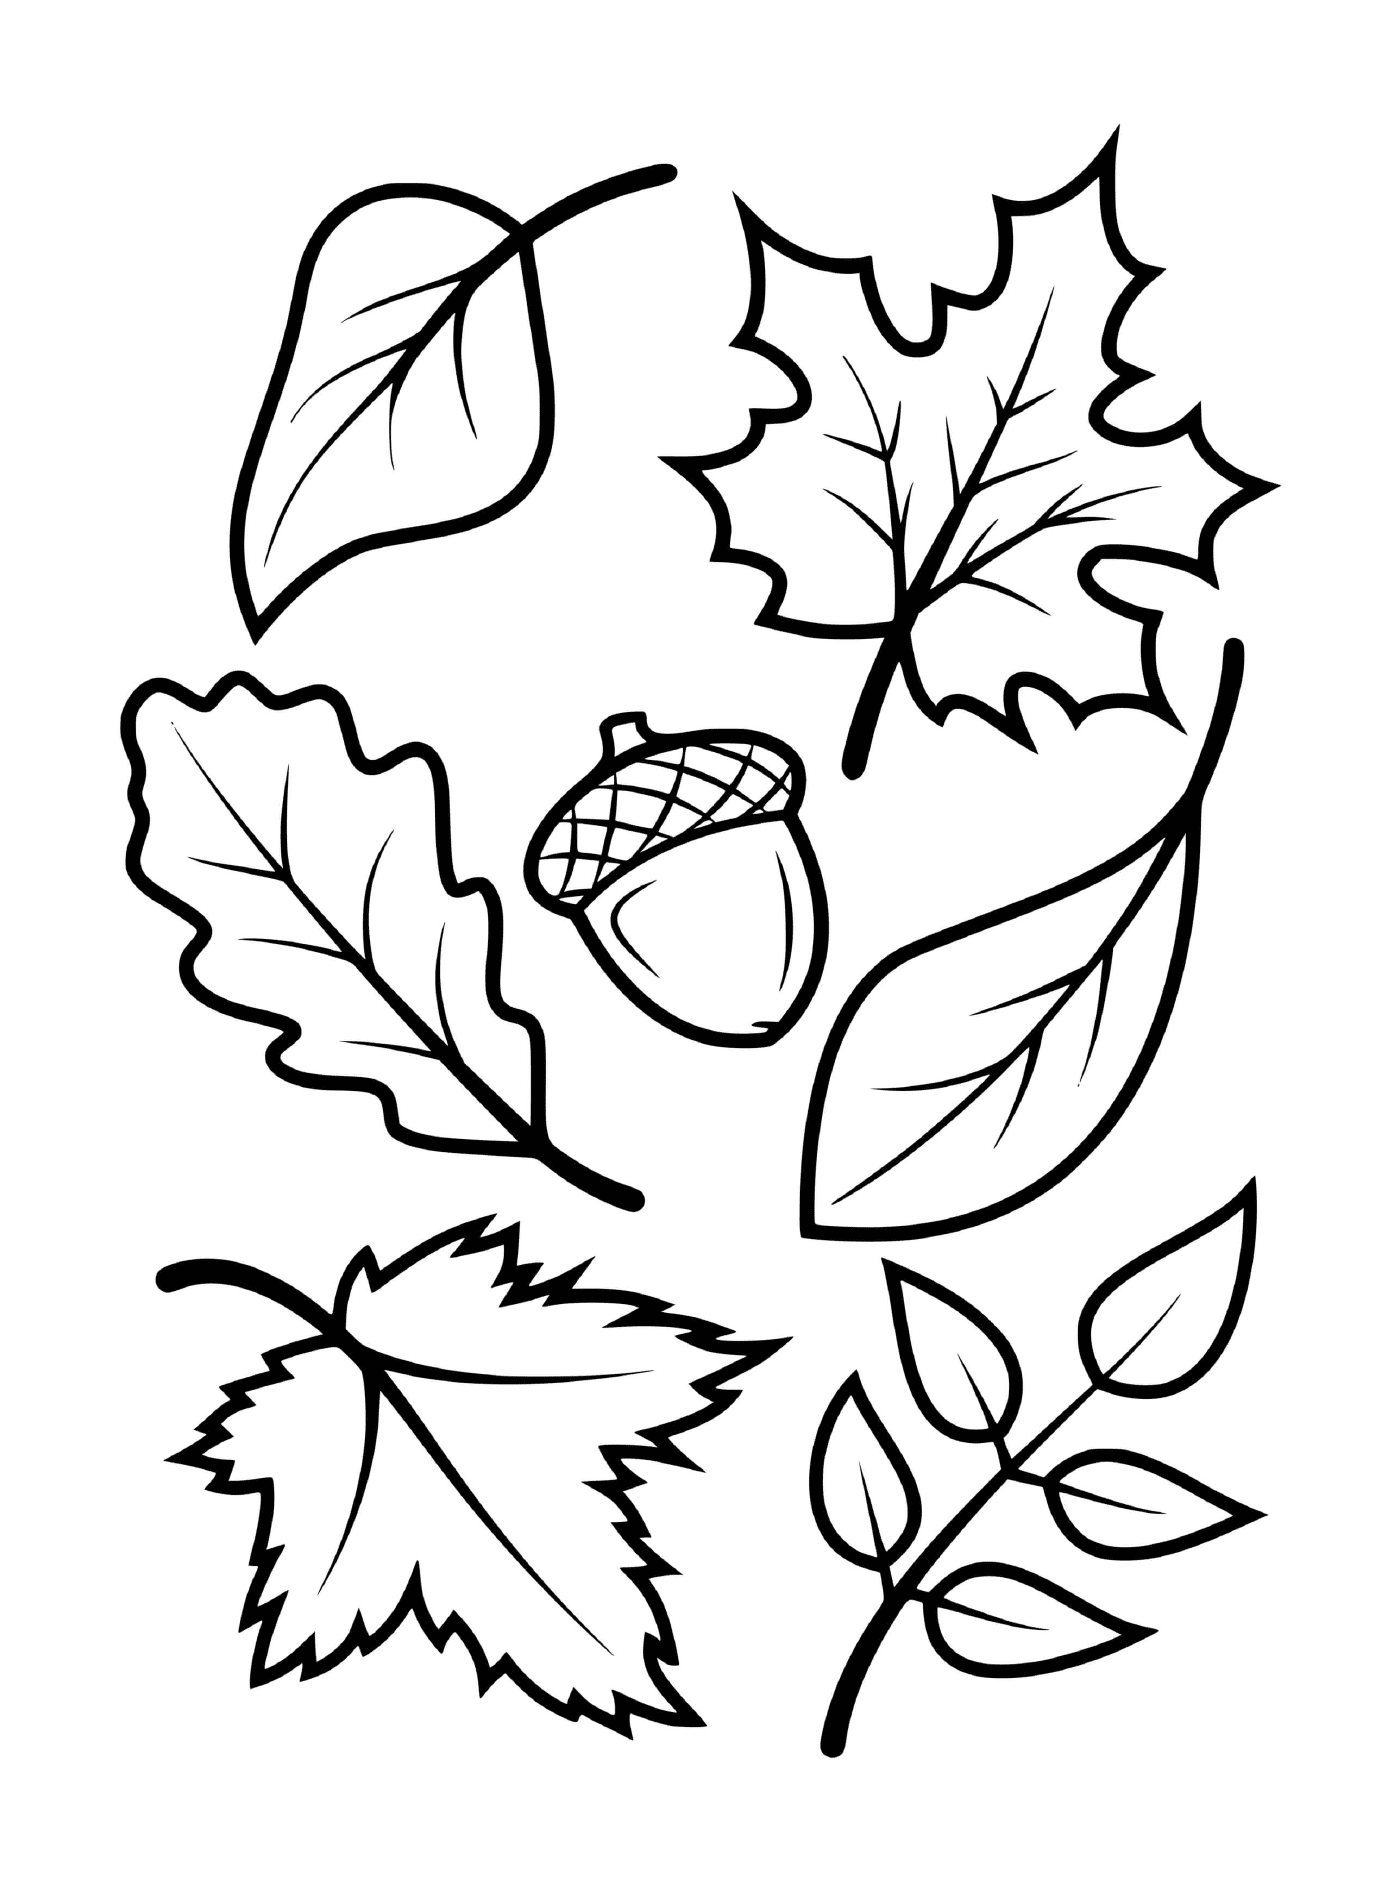   Feuilles et glands d'arbres d'automne (érable, hêtre, chêne) 